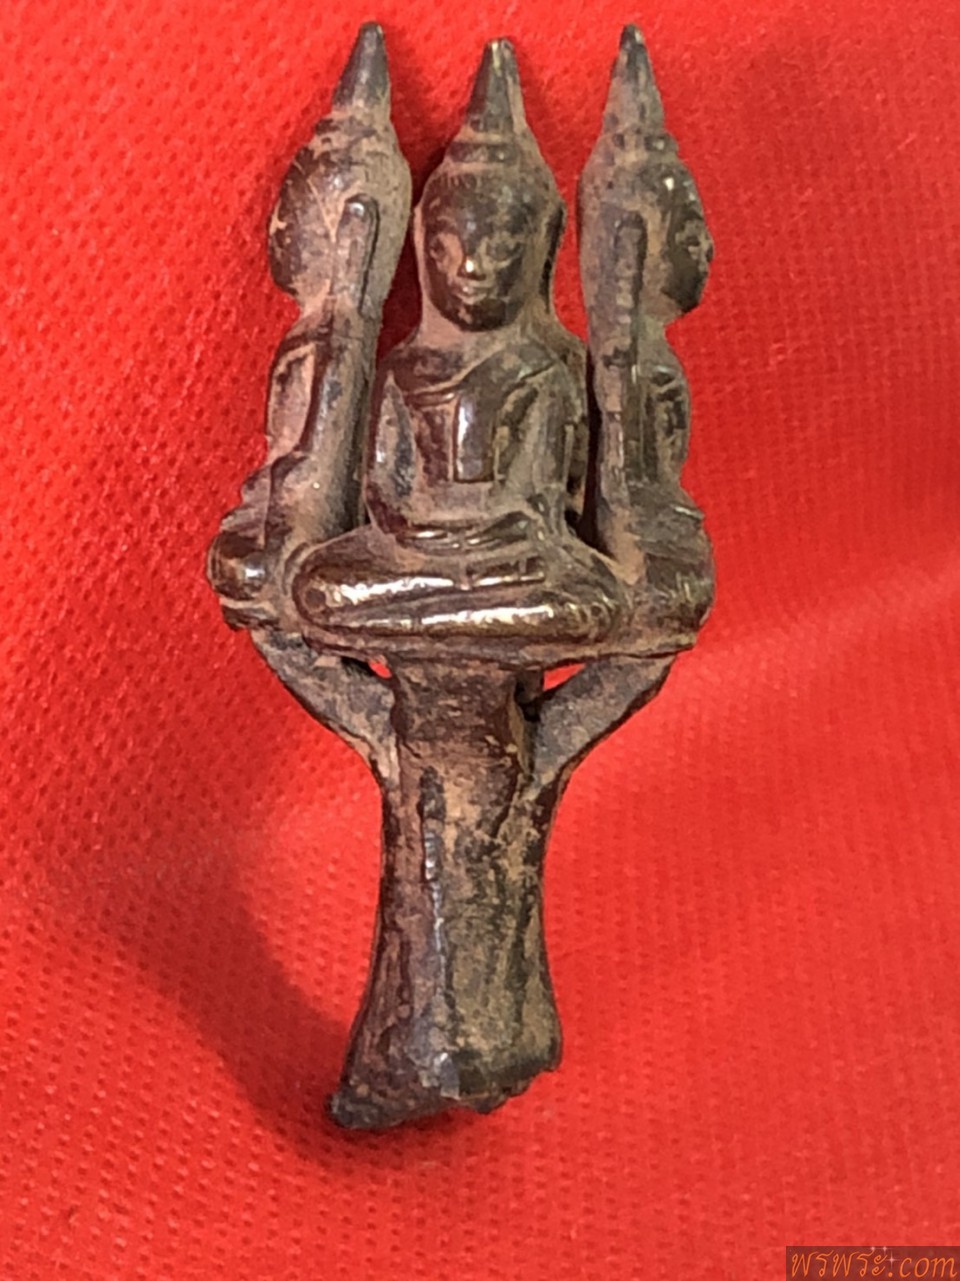 พระยอดธง4องค์ ปางสมาธิ เนื้อสัมฤทธิ์เก่าๆ ก่อนปี2500/พบ1ช่อ4องค์ ณ.วันที่20/02/2564/Phra Yod Thong, 4 Buddha images, meditation posture, old bronze Before the year 2500 / found 1 bouquet of 4 pieces As of 20/02/2564